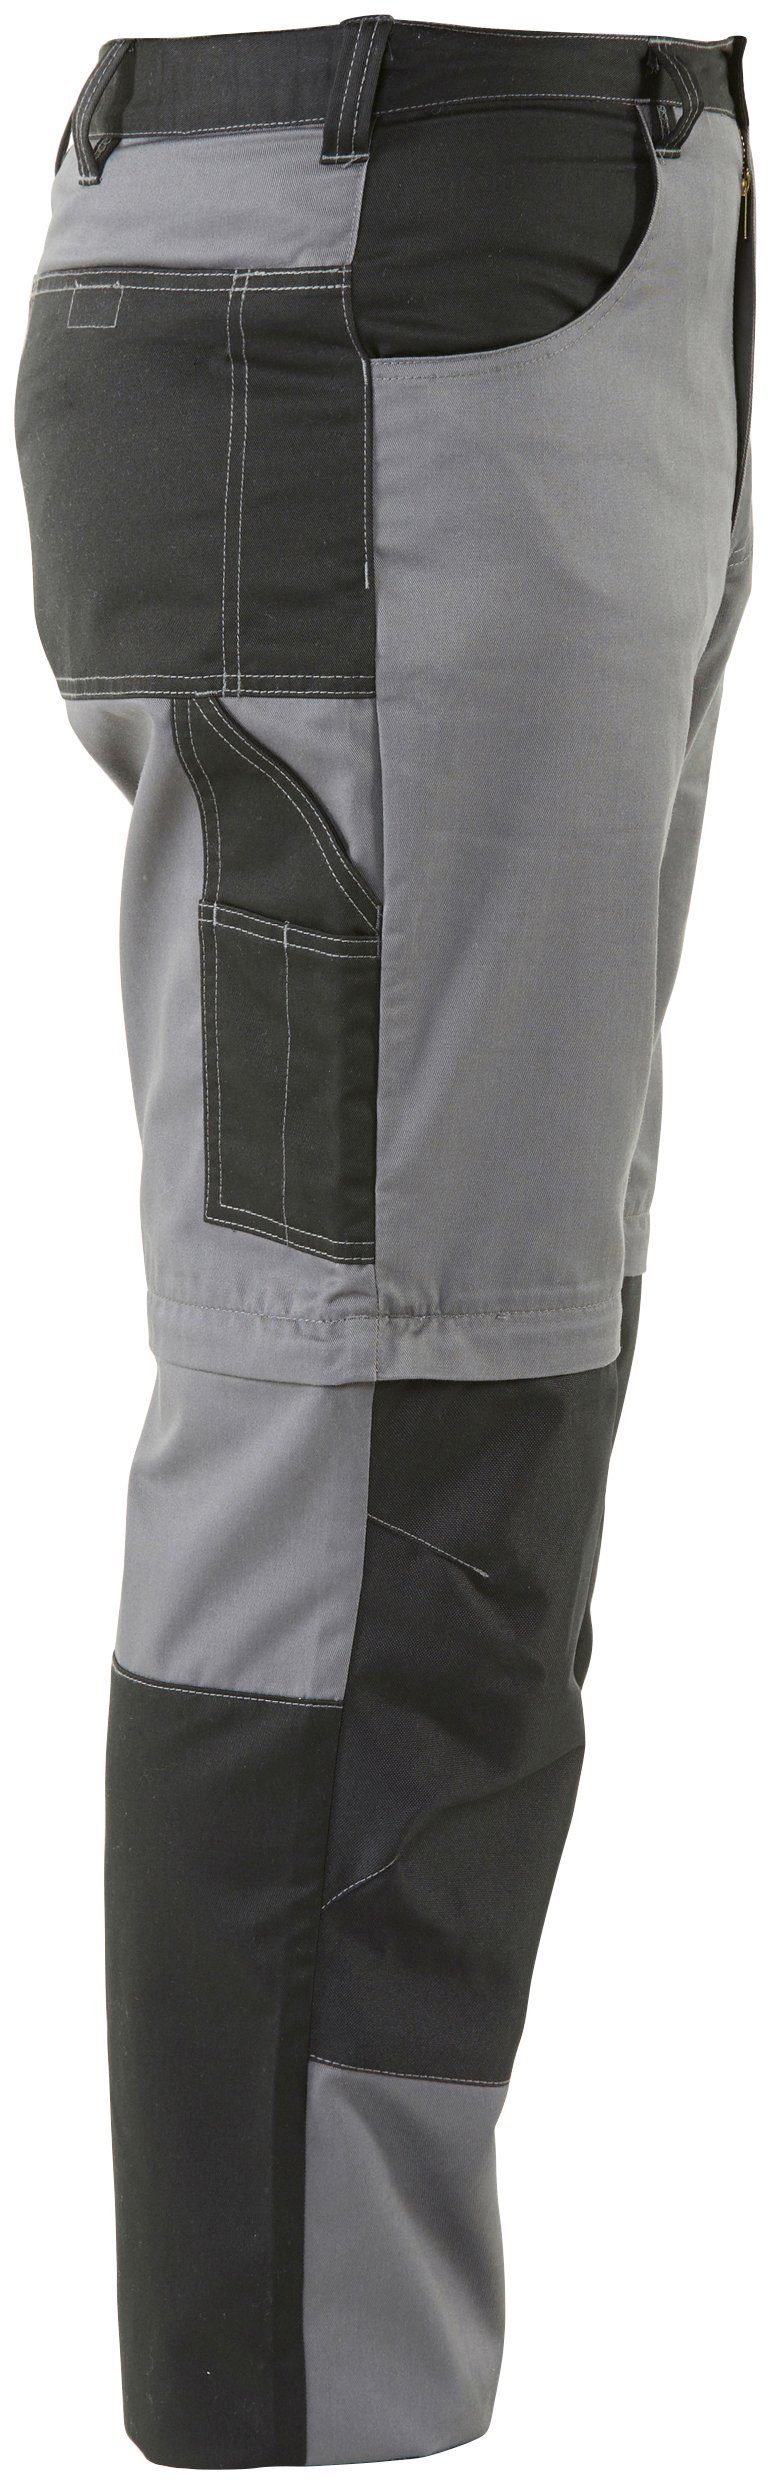 Northern Country Arbeitshose Zipp-off Taschen) lange in einem Kniebereich, mit Arbeitshose Funktion: 8 (verstärkter Worker möglich, Beinverlängerung und Shorts